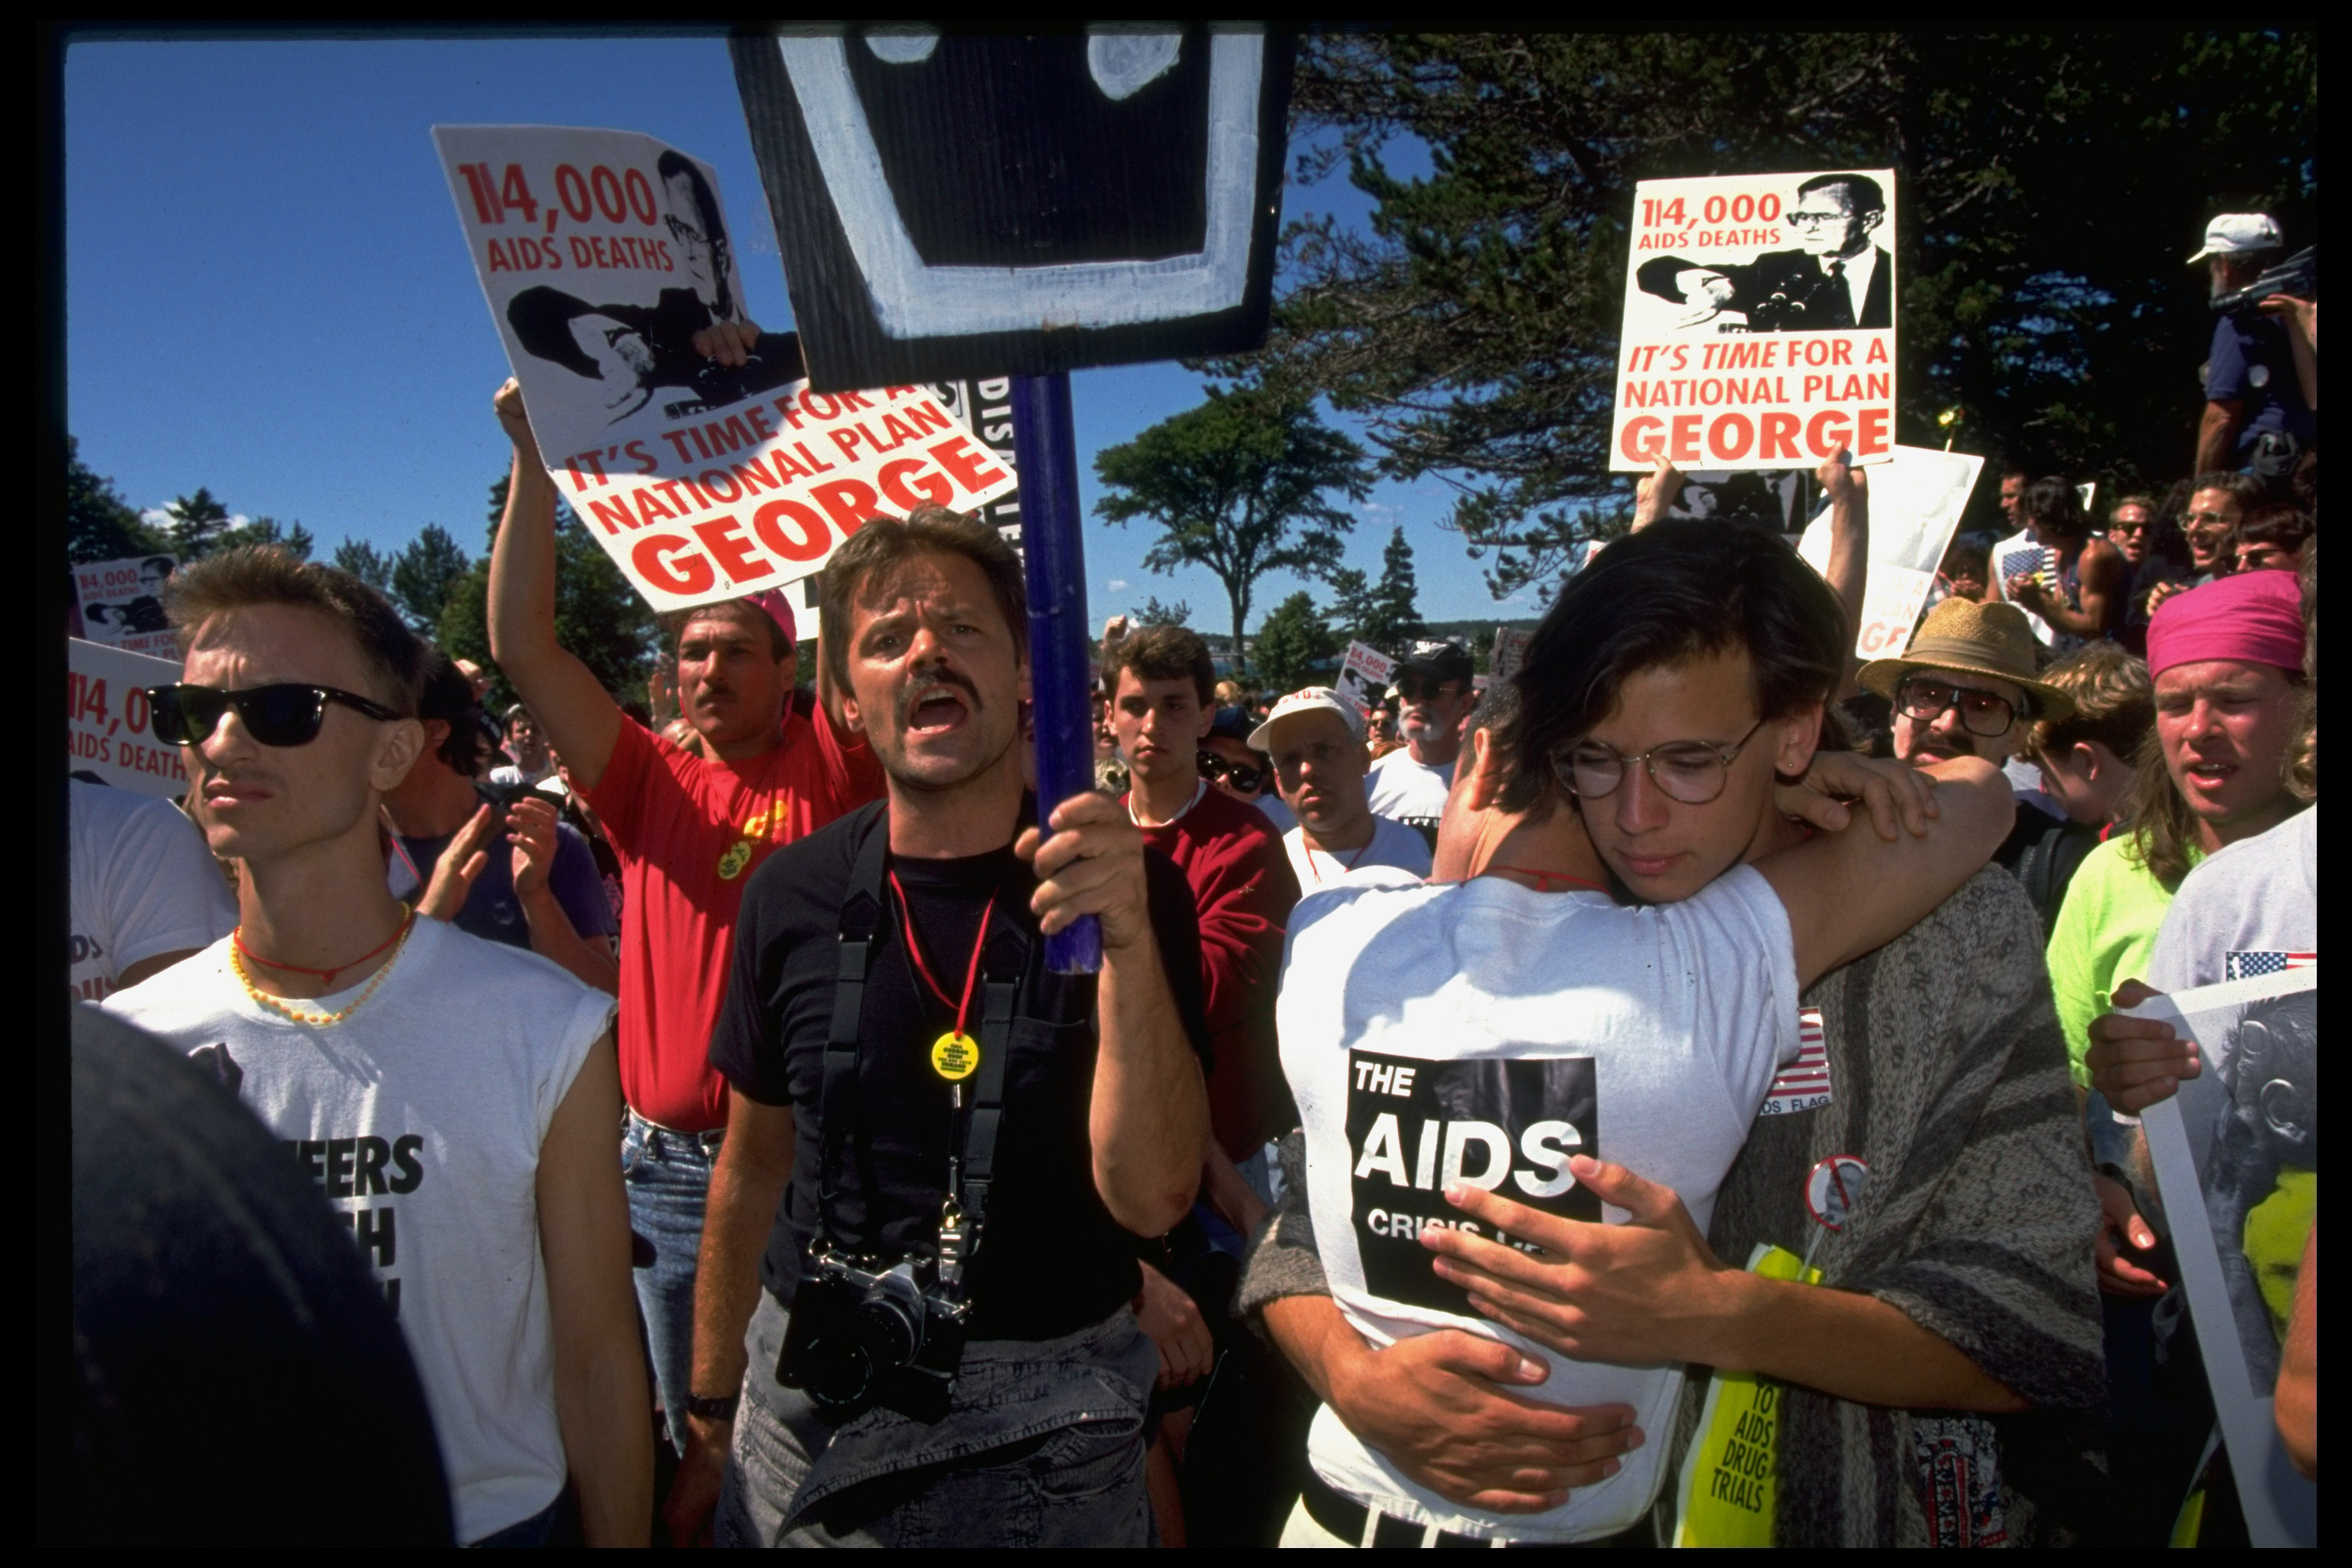 Protestas del colectivo gay contra la política del presidente Bush sobre el sida en una manifestación organizada por Act Up en los años 90.